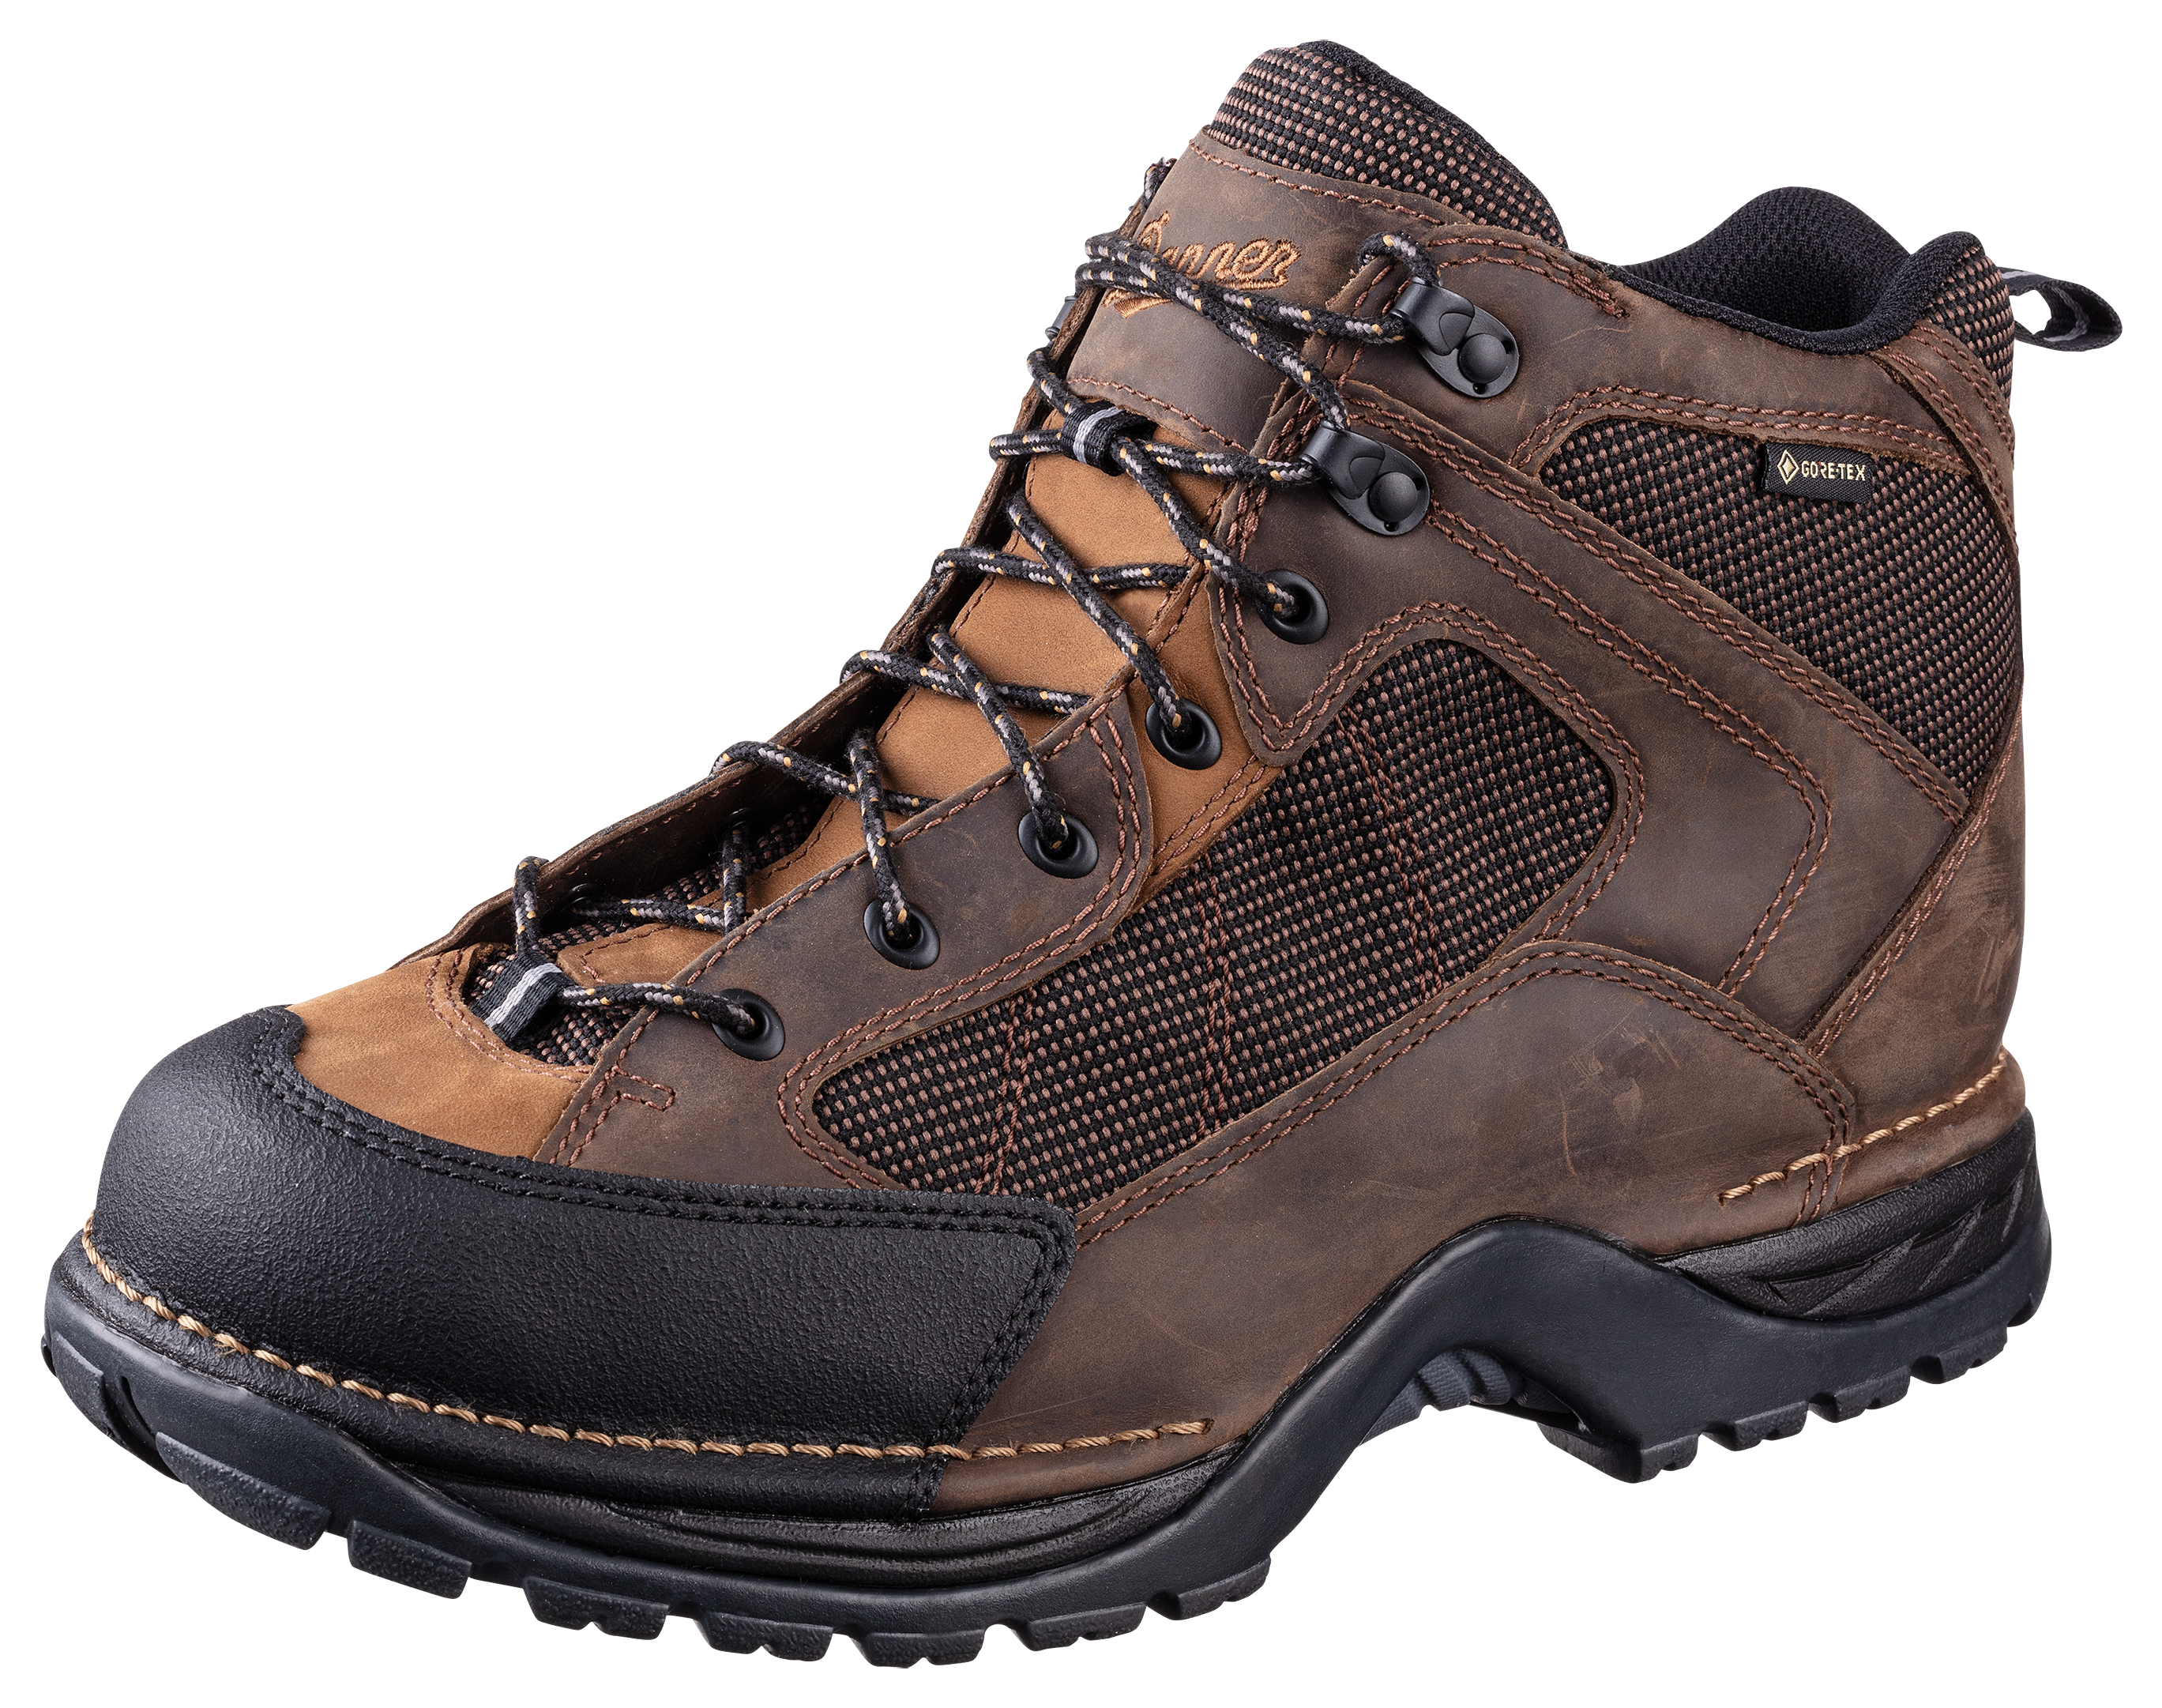 Danner Radical 452 GORE-TEX Hiking Boots for Men - Dark Brown - 8M